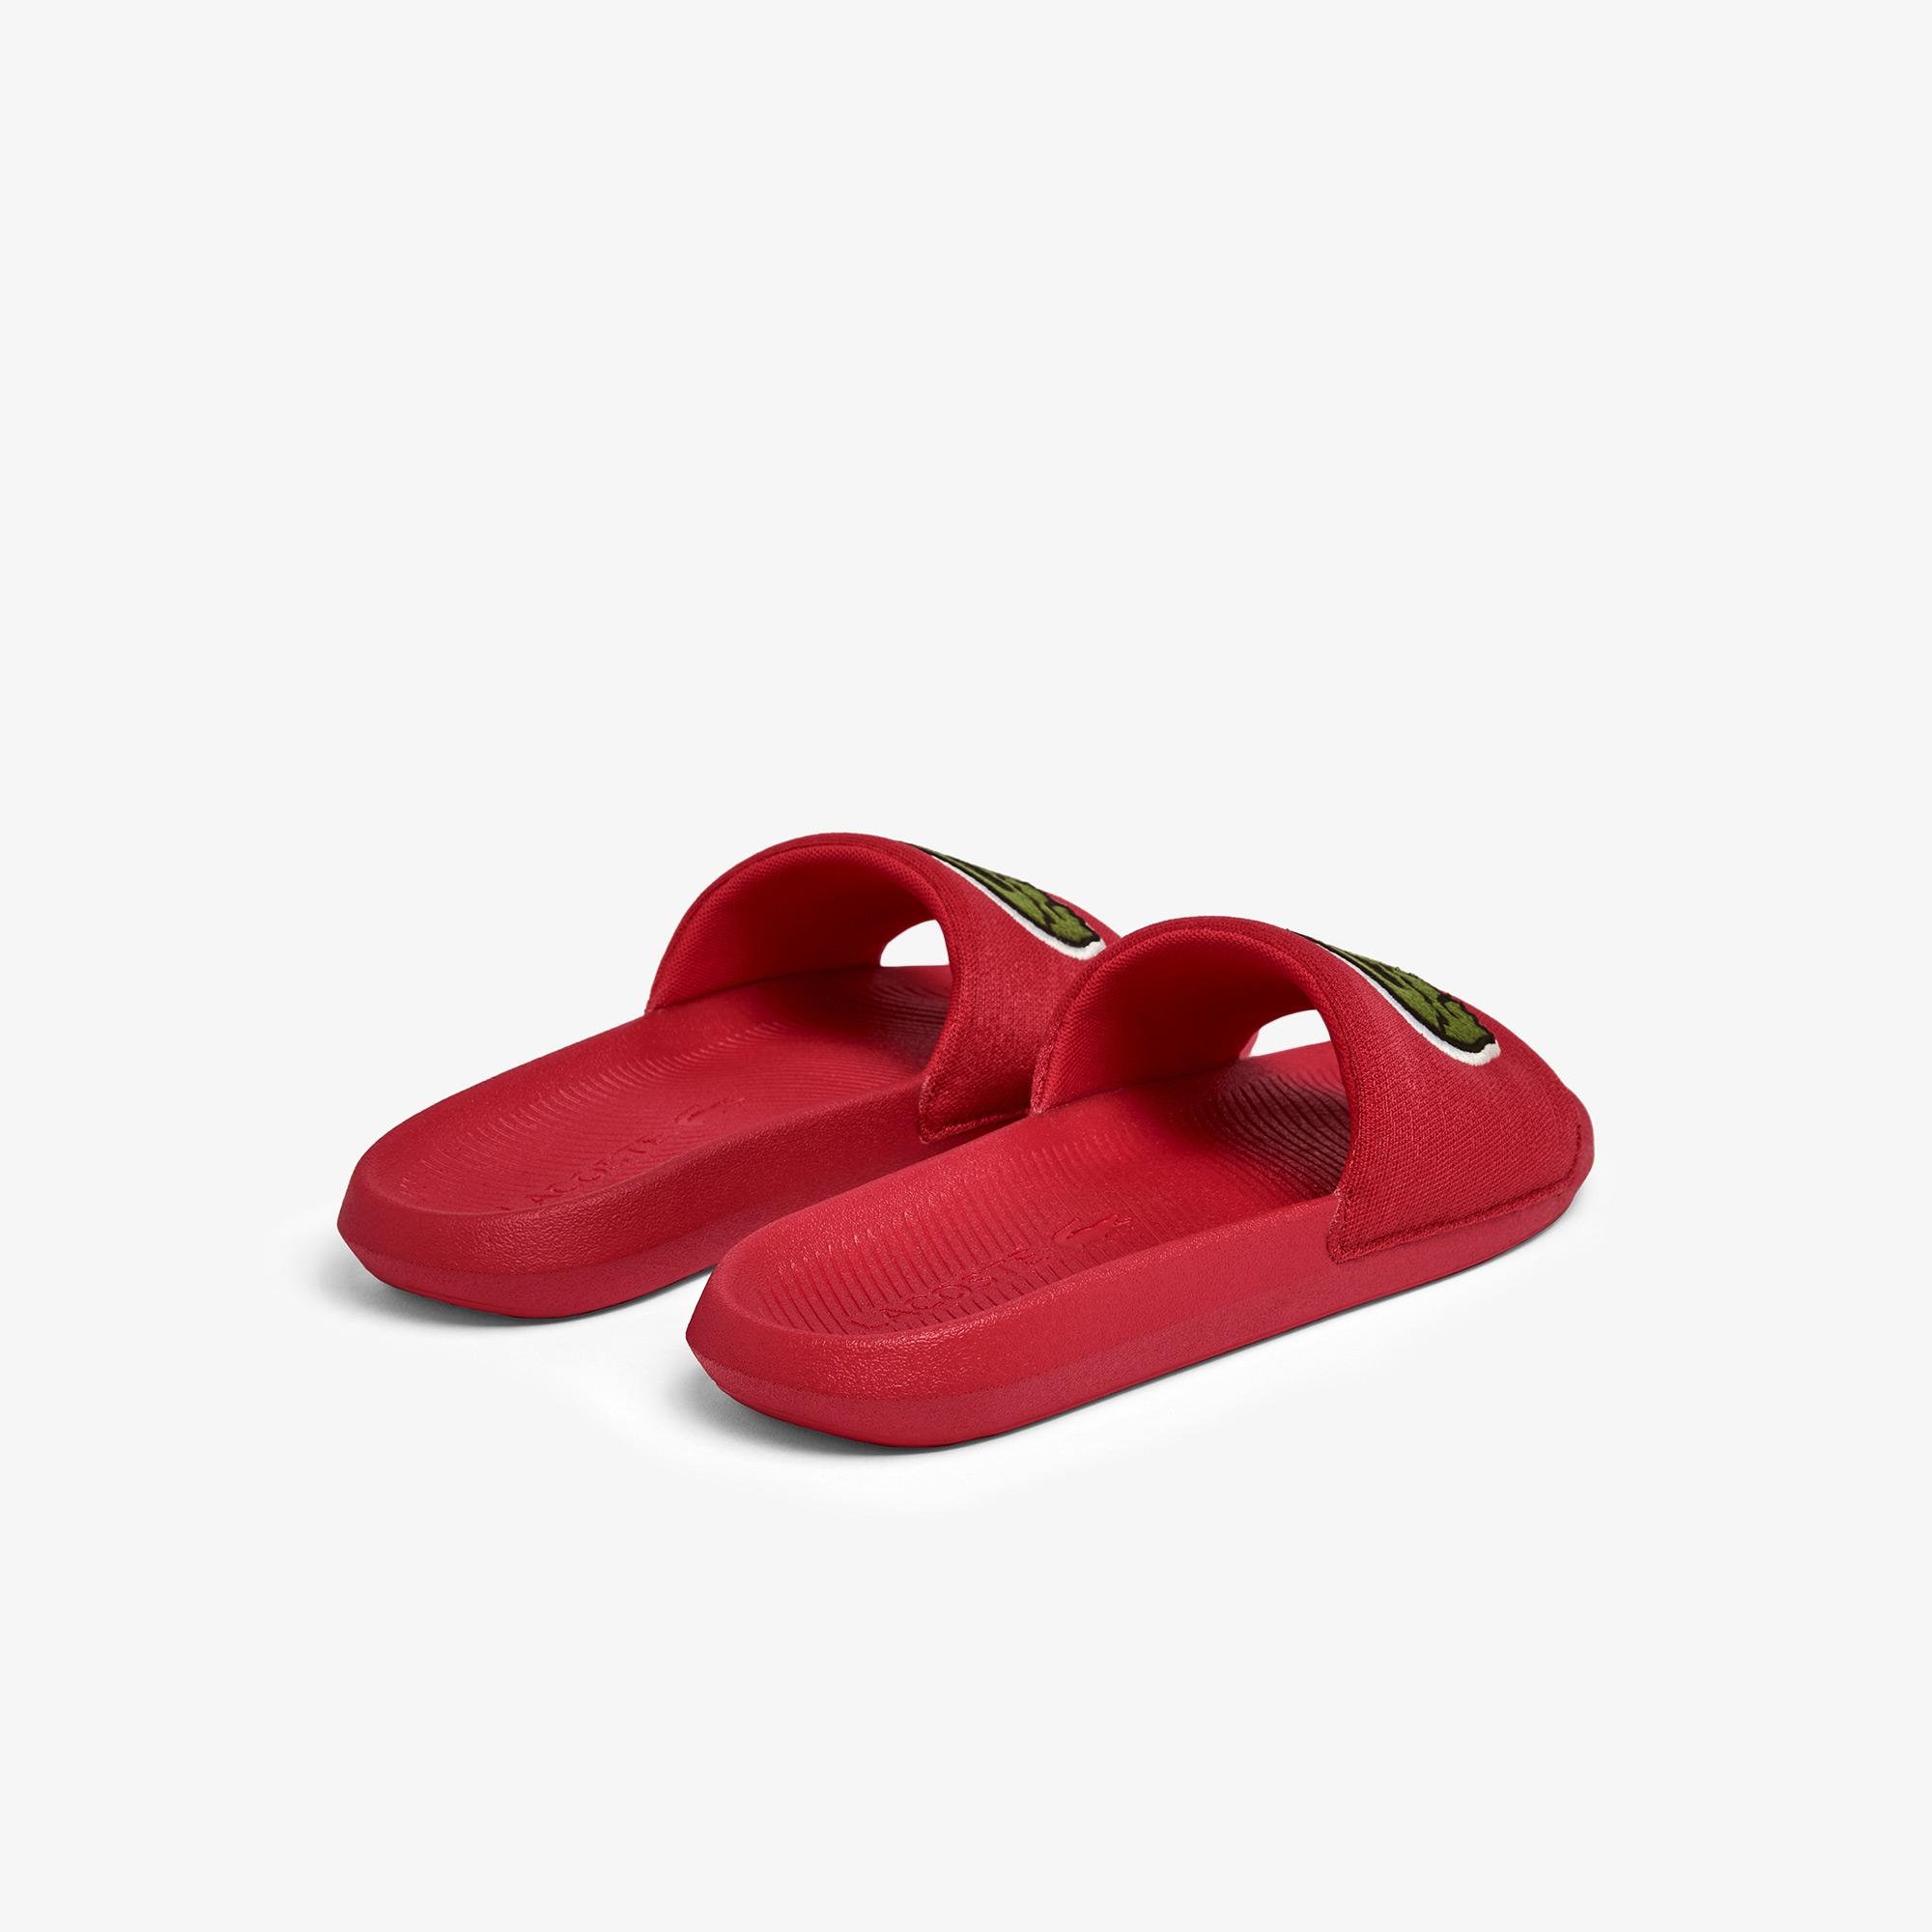 Lacoste Men's Croco Slıde 0921 1 Cma Shoes